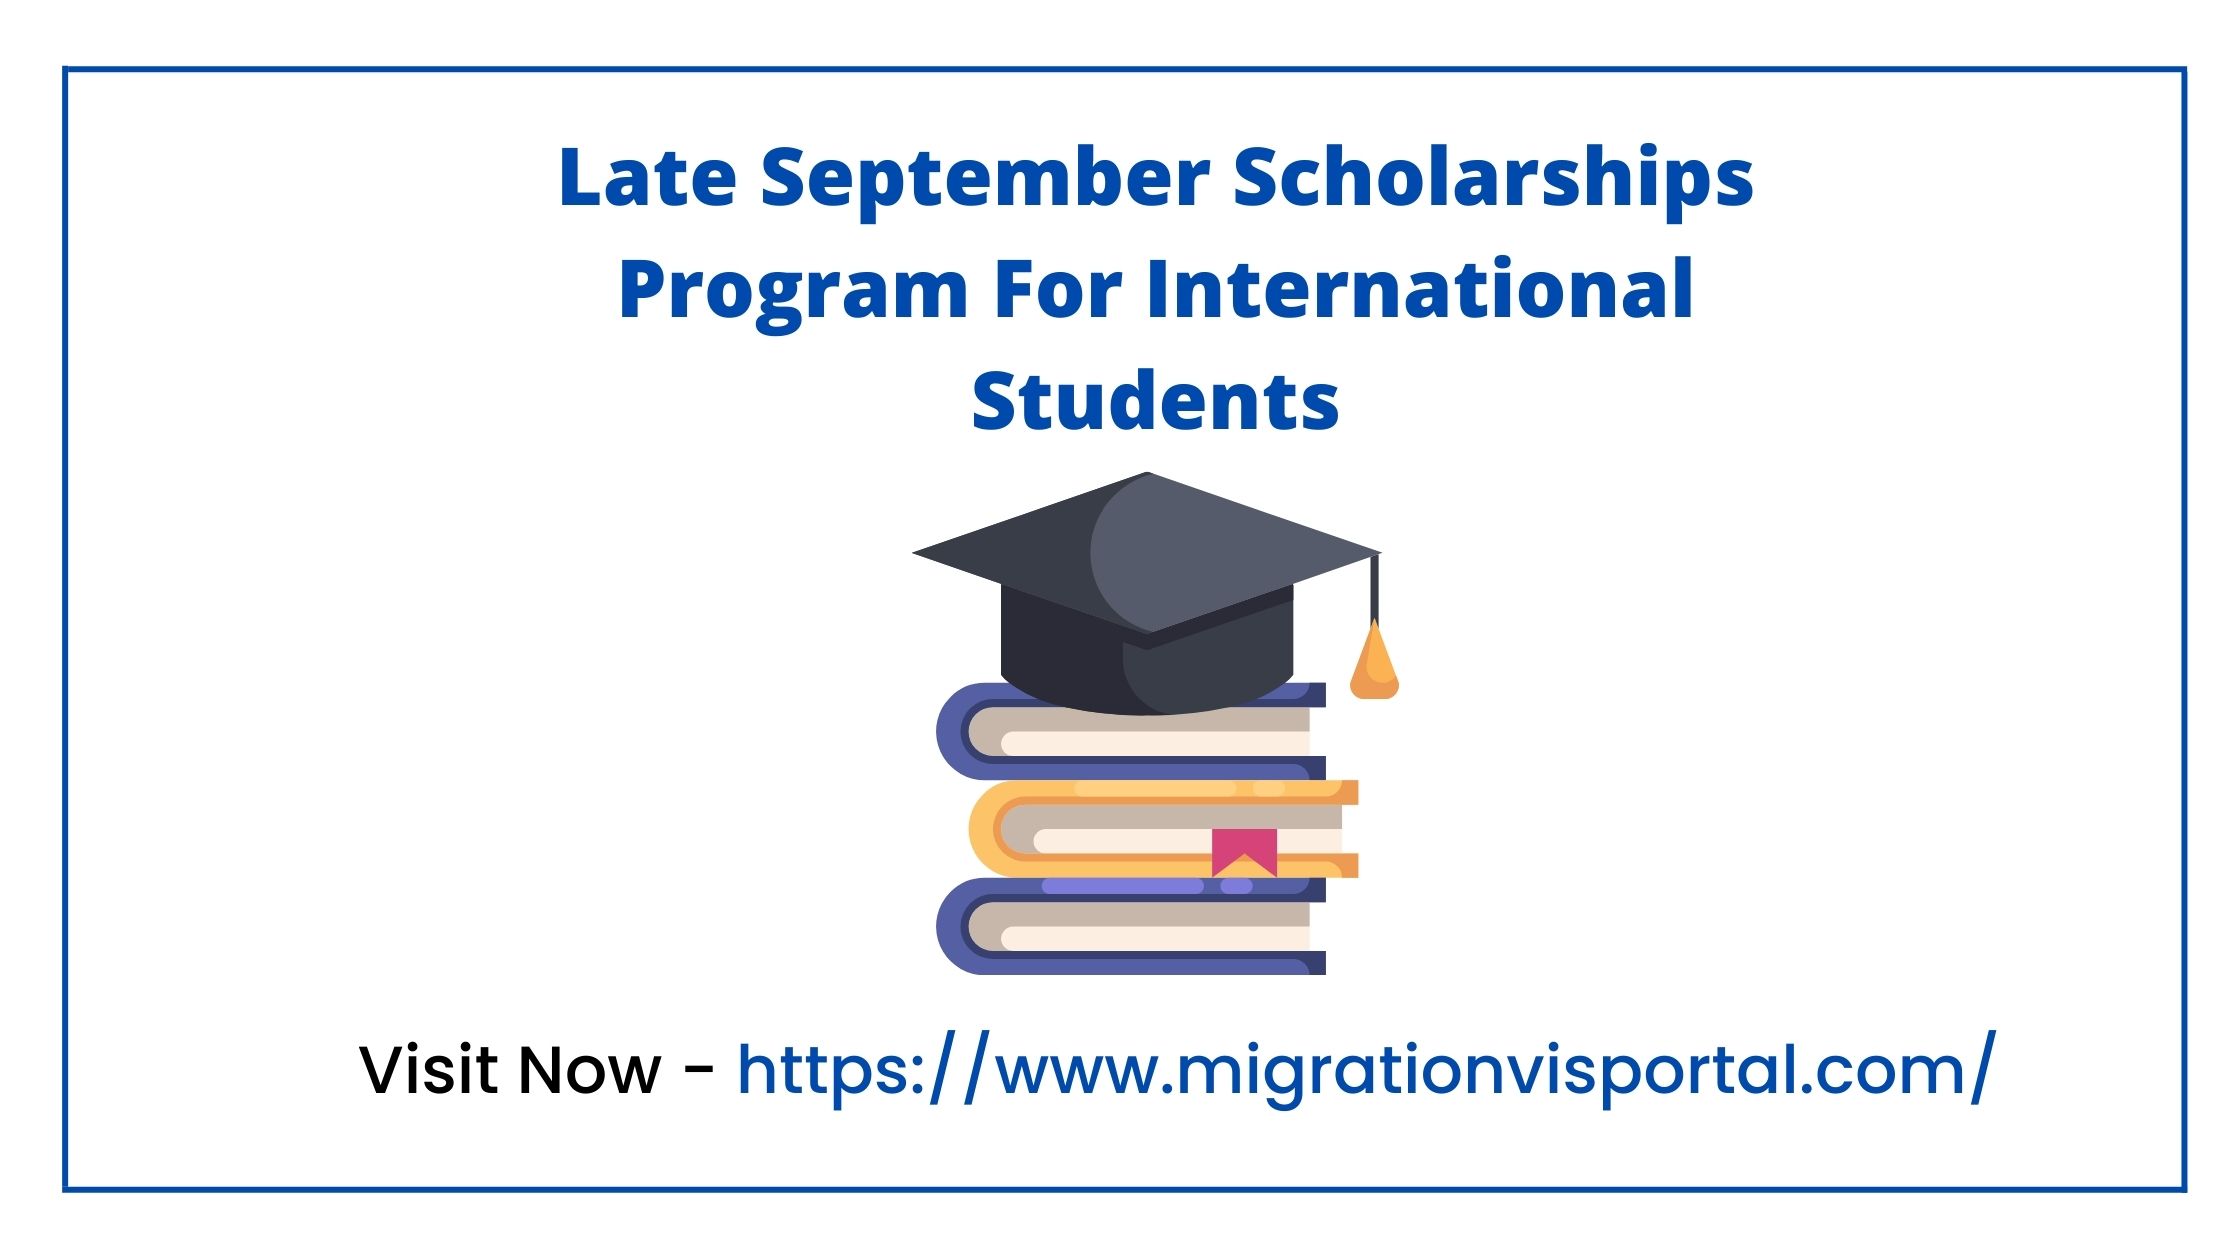 Late September Scholarships Program For International Students